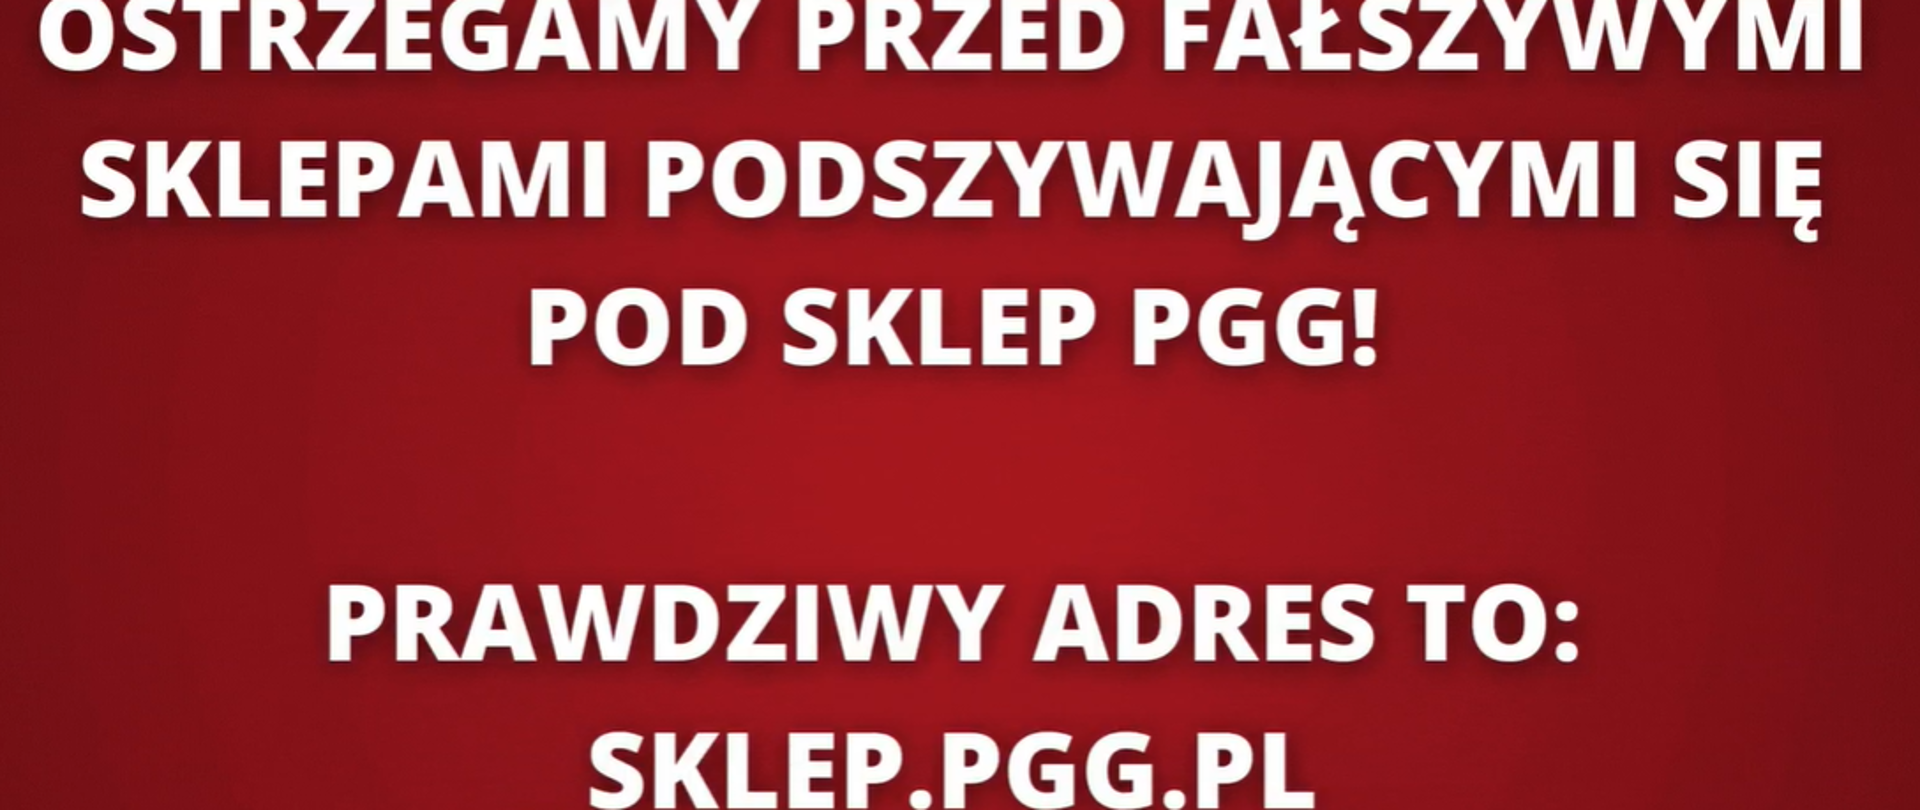 Napis białe litery na czerwonym tle Ostrzegamy przed fałszywymi sklepami podszywającymi się pod sklep PGG